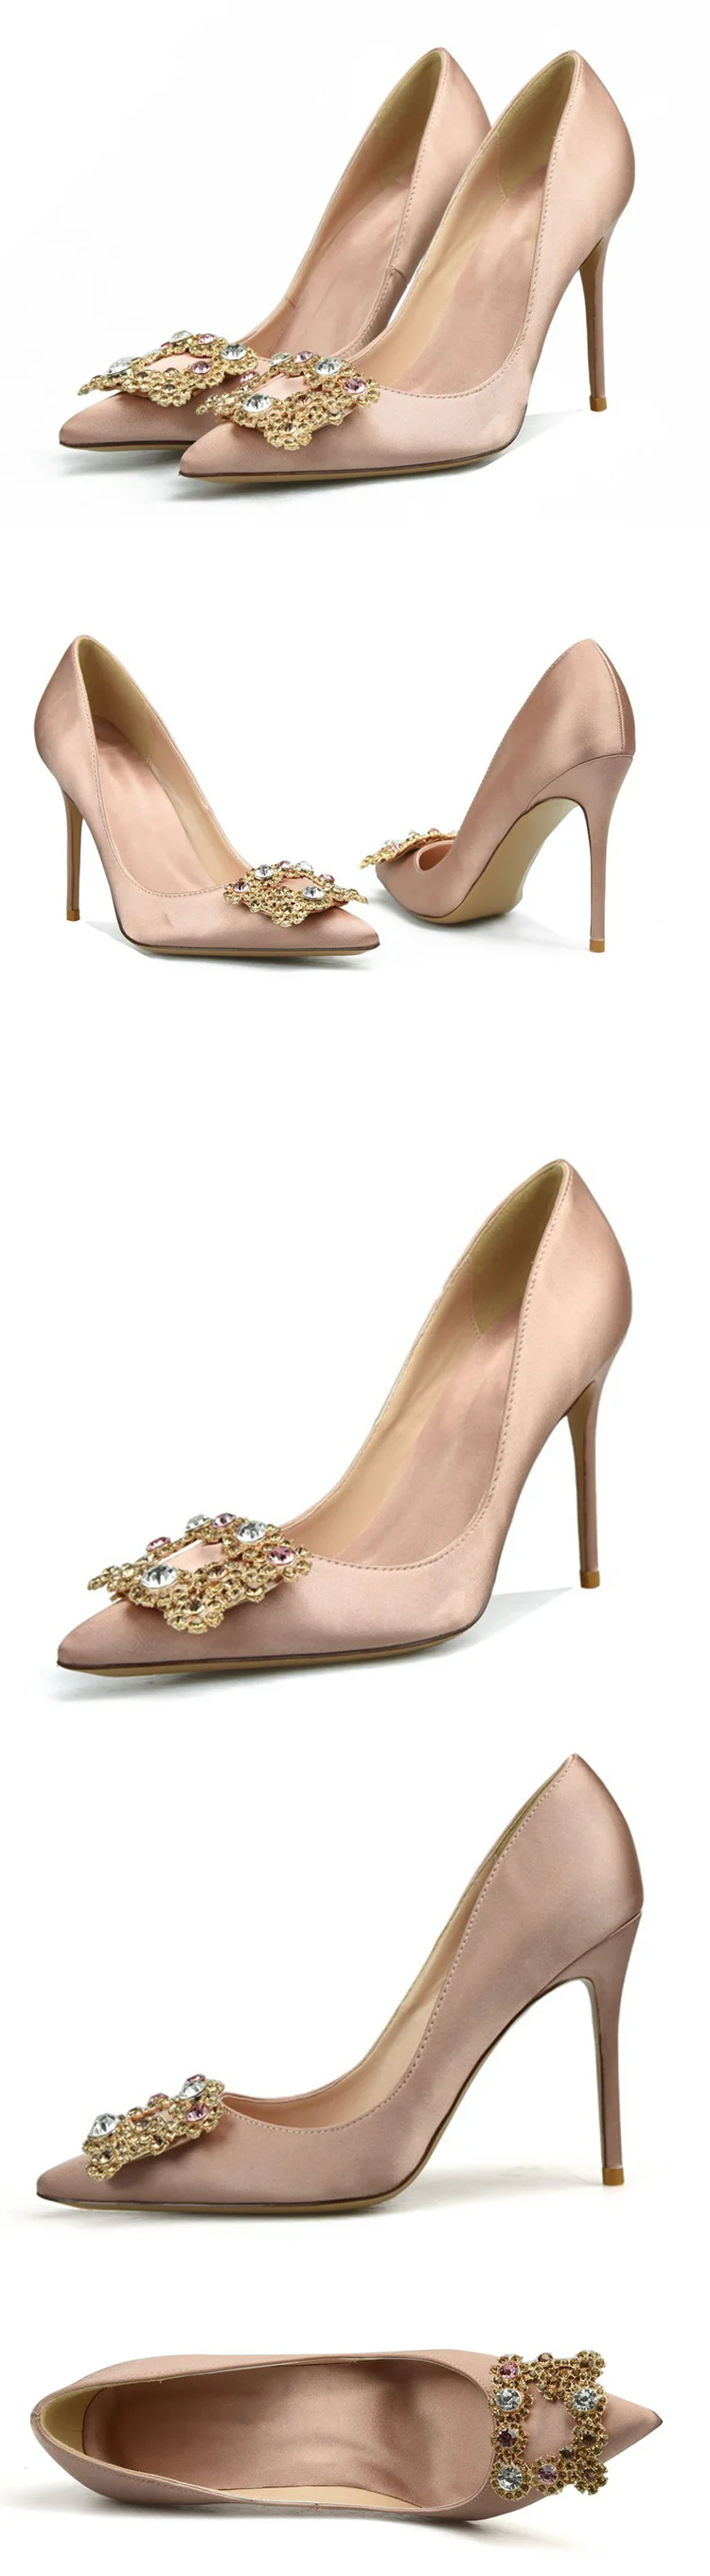 WEIQIAONA/Новинка года; брендовая дизайнерская Роскошная обувь с украшением в виде кристаллов; женские шелковые свадебные модельные туфли с острым носком на высоком каблуке; большие размеры 33-42